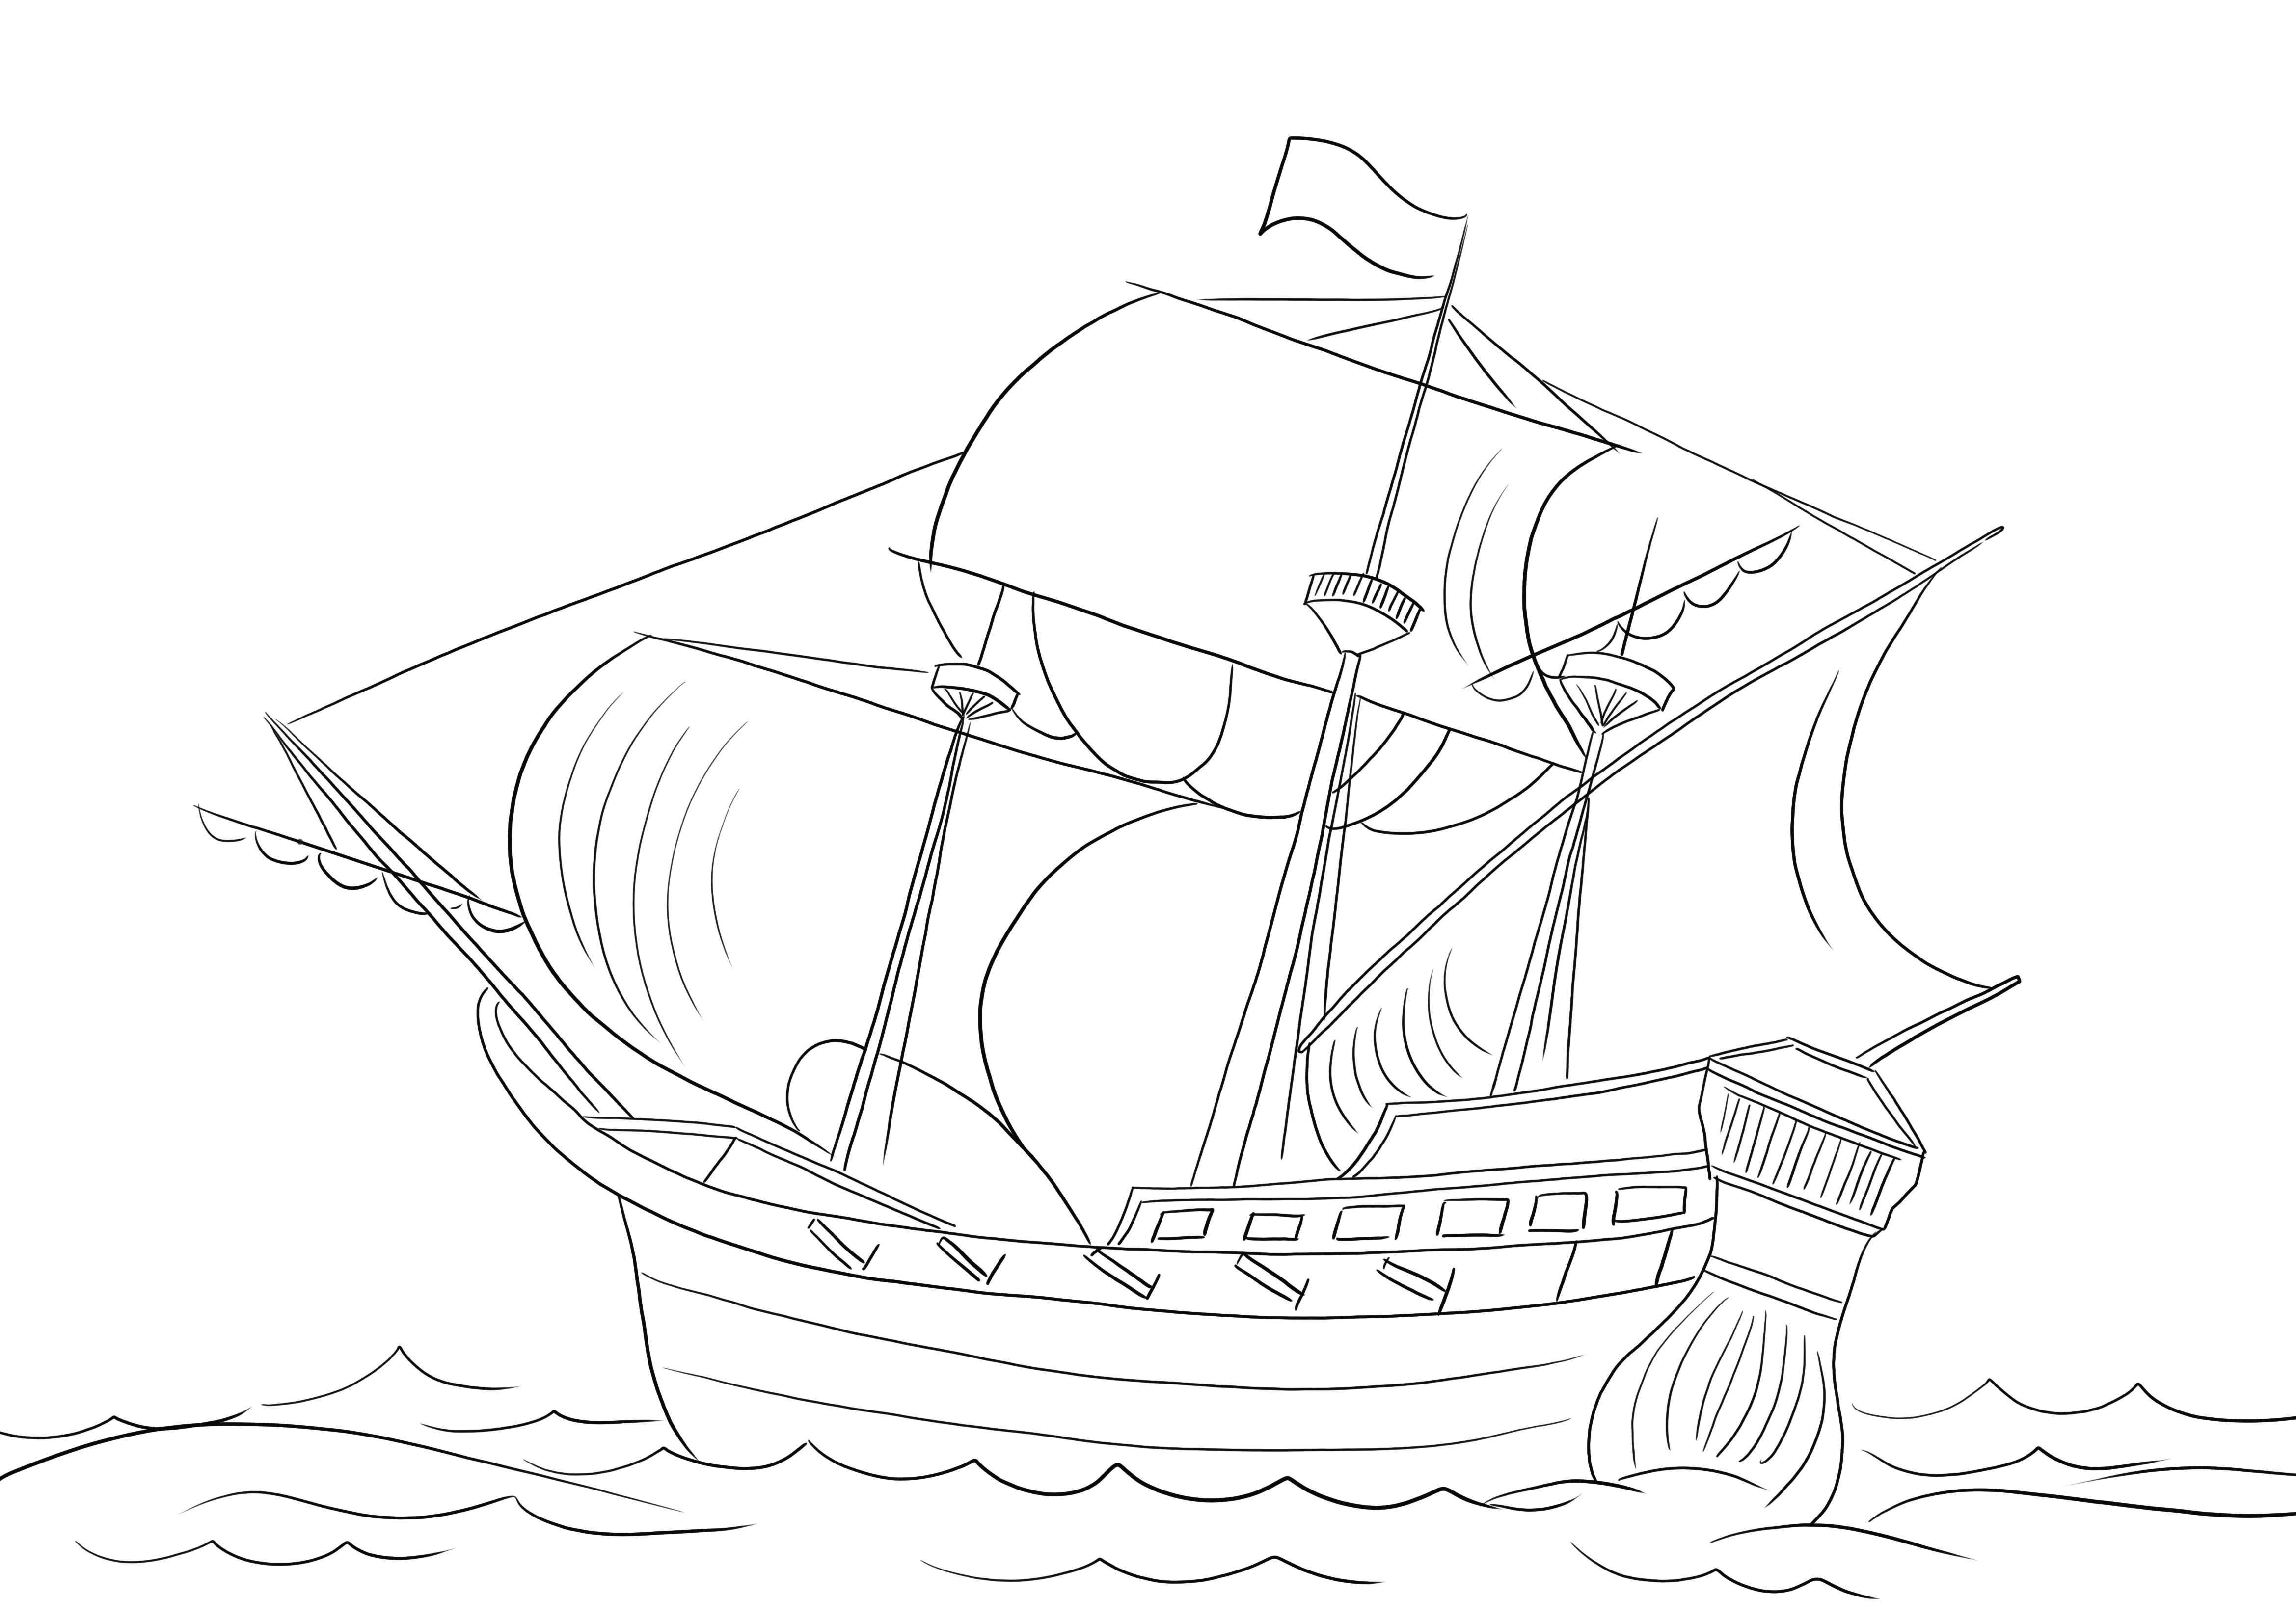 Stampabile gratuitamente di una nave pirata per colorare e conoscere i tipi di navi